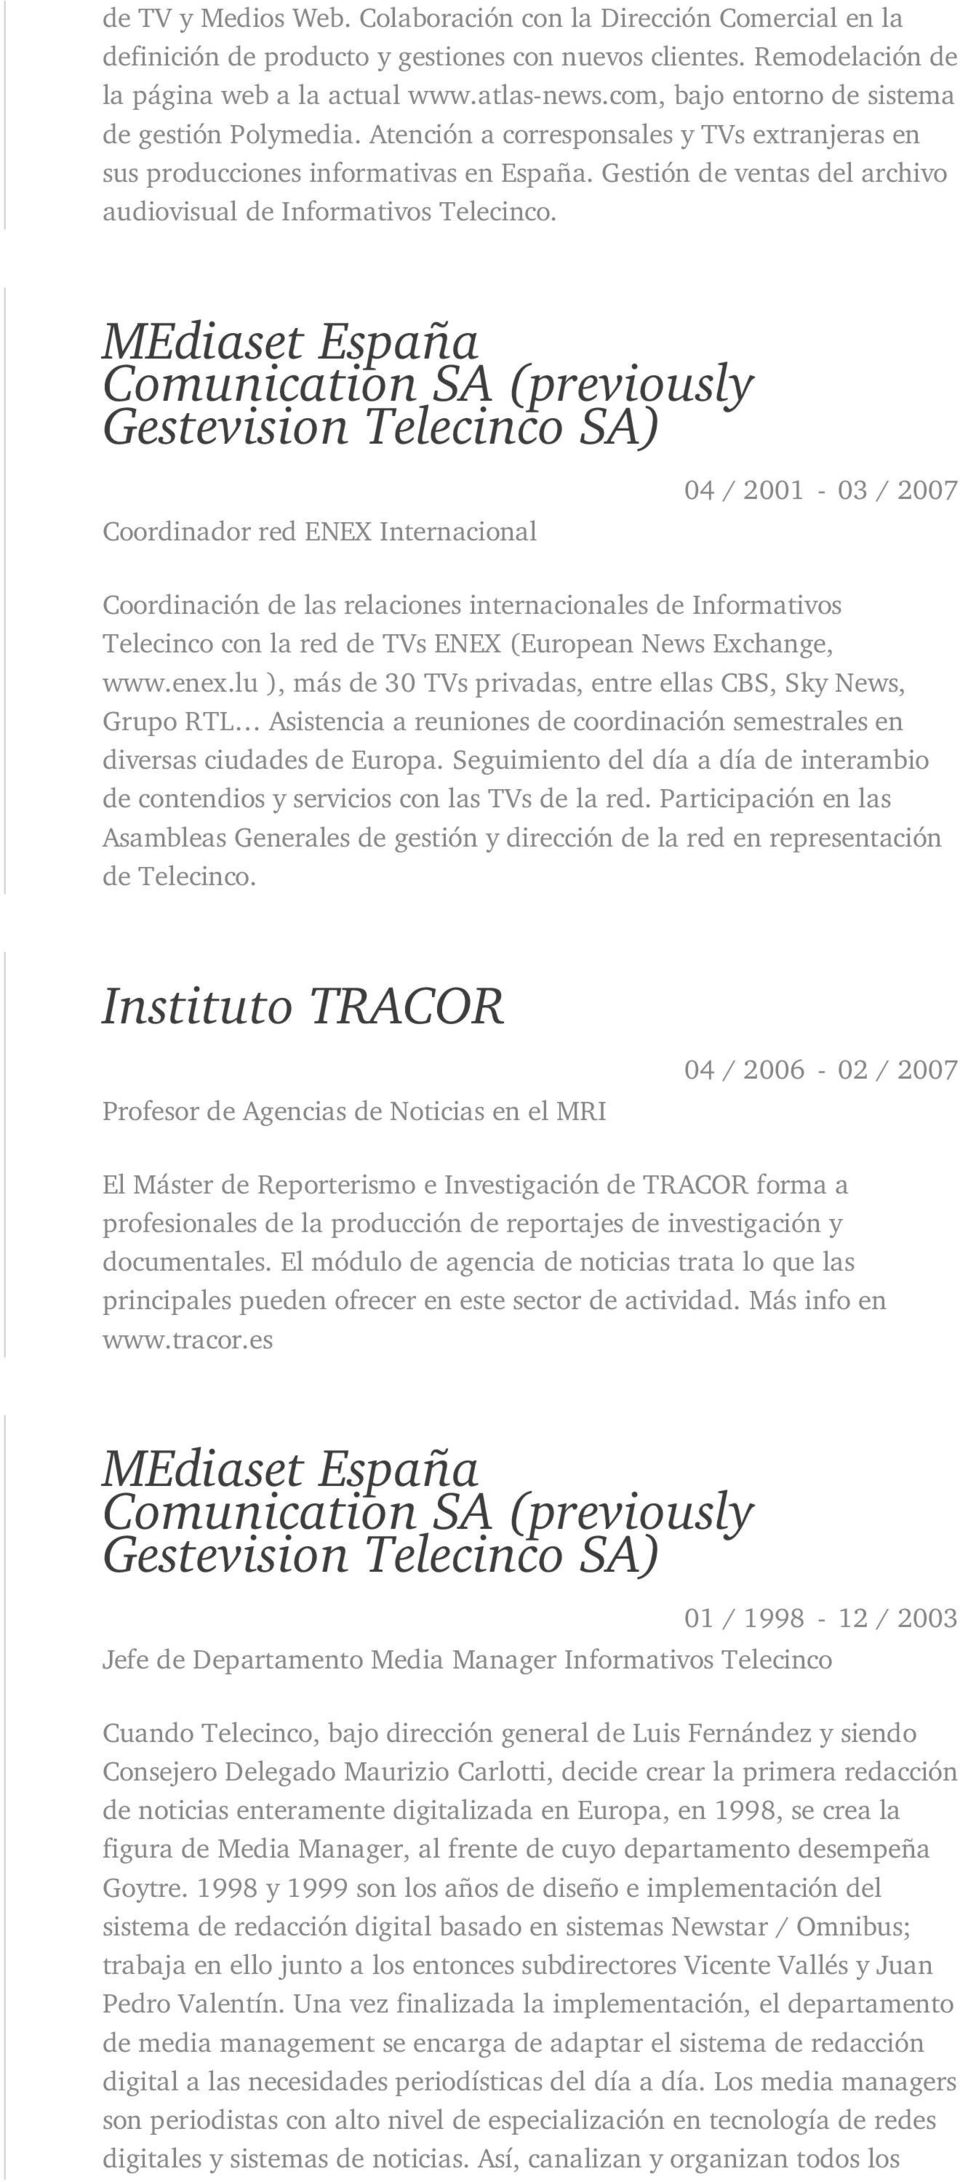 Gestión de ventas del archivo audiovisual de Informativos Telecinco.